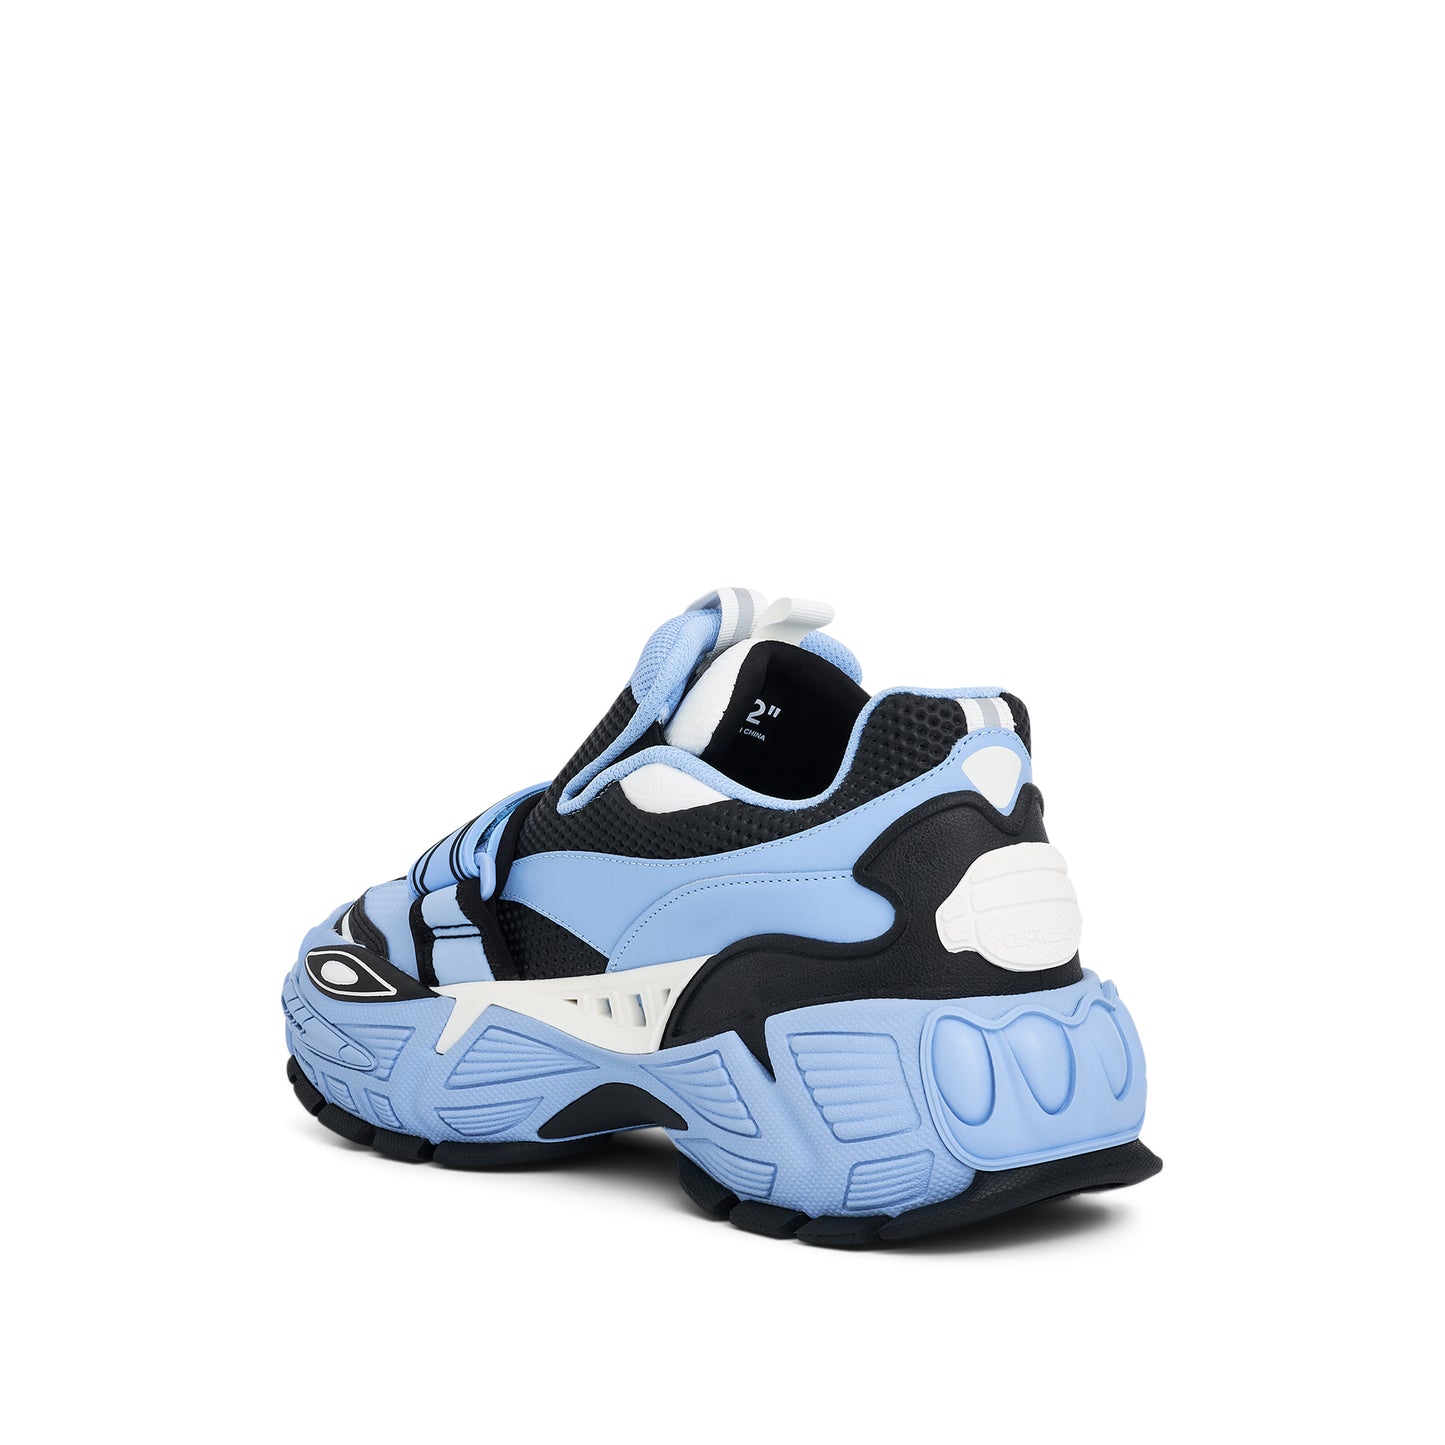 Glove Slip On Sneaker in Light Blue/Black